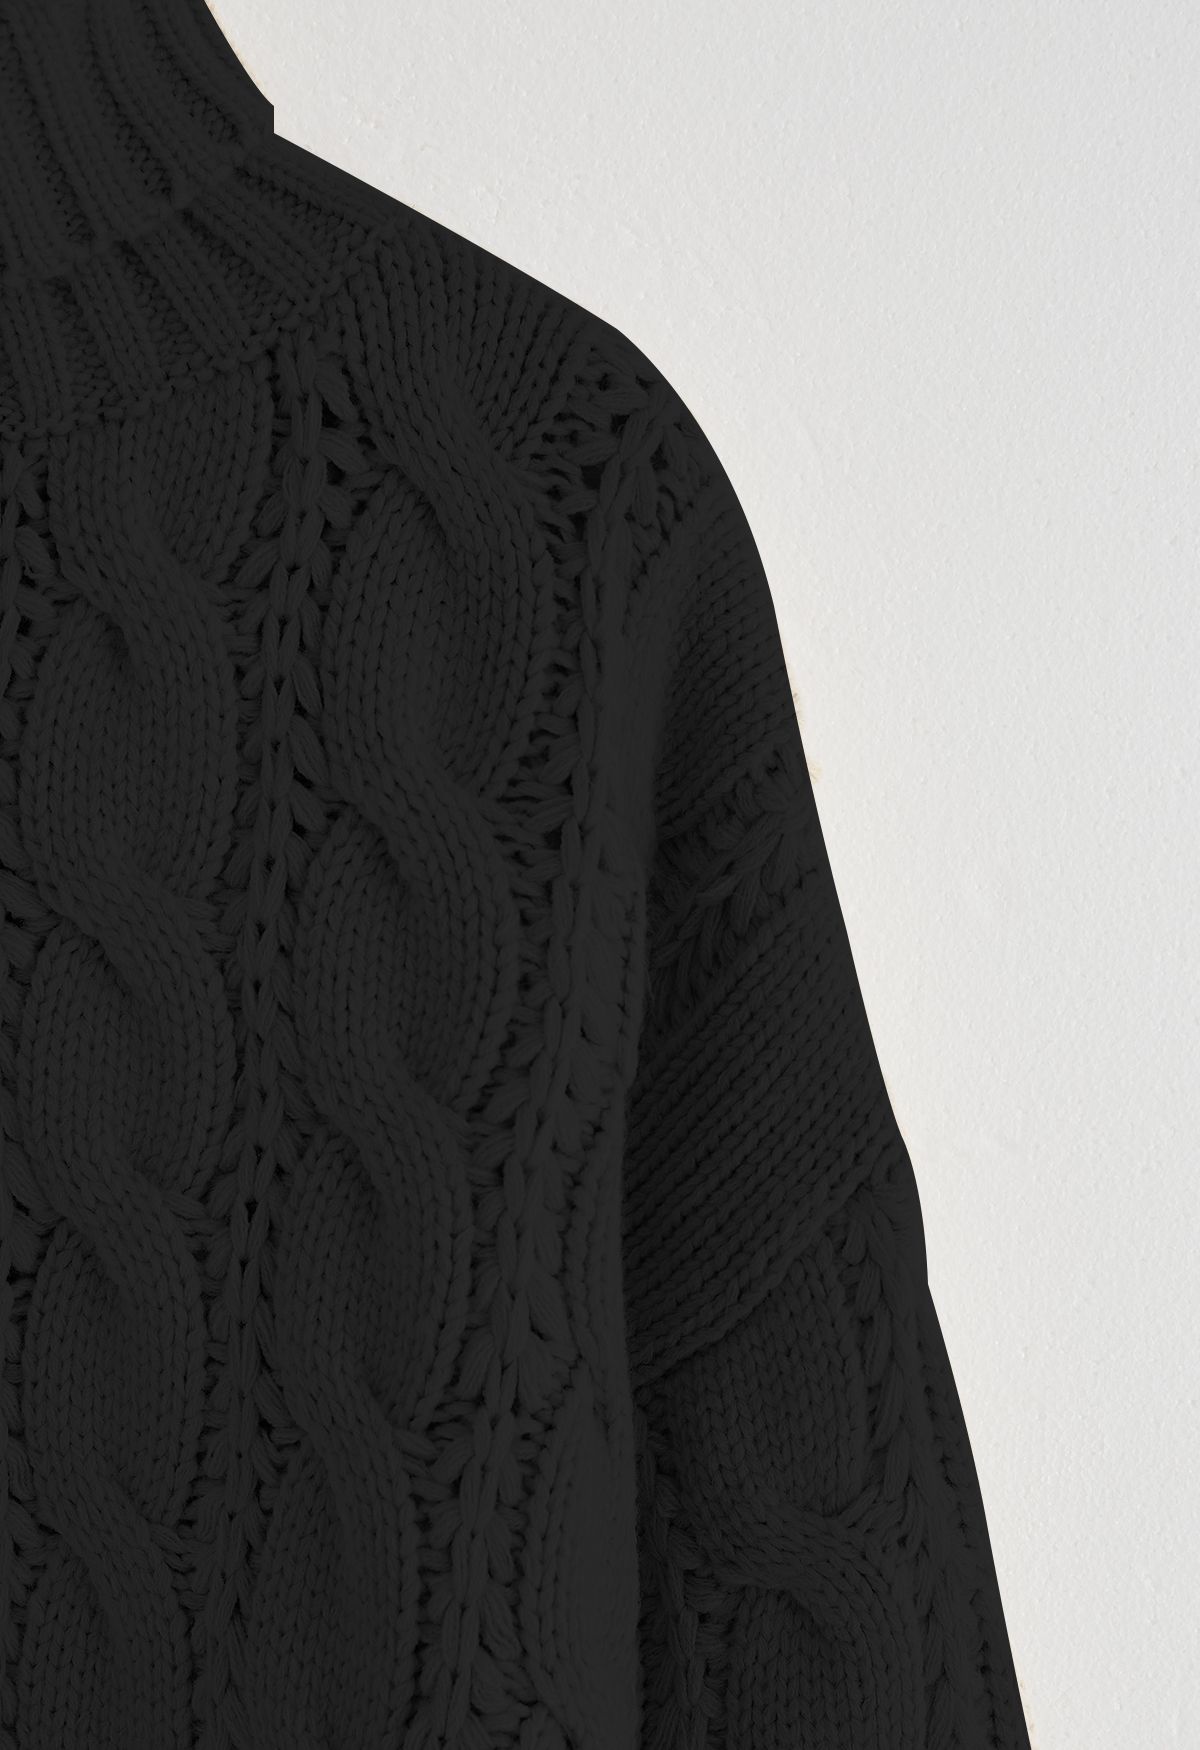 Maglione corto in maglia intrecciata a collo alto di colore nero